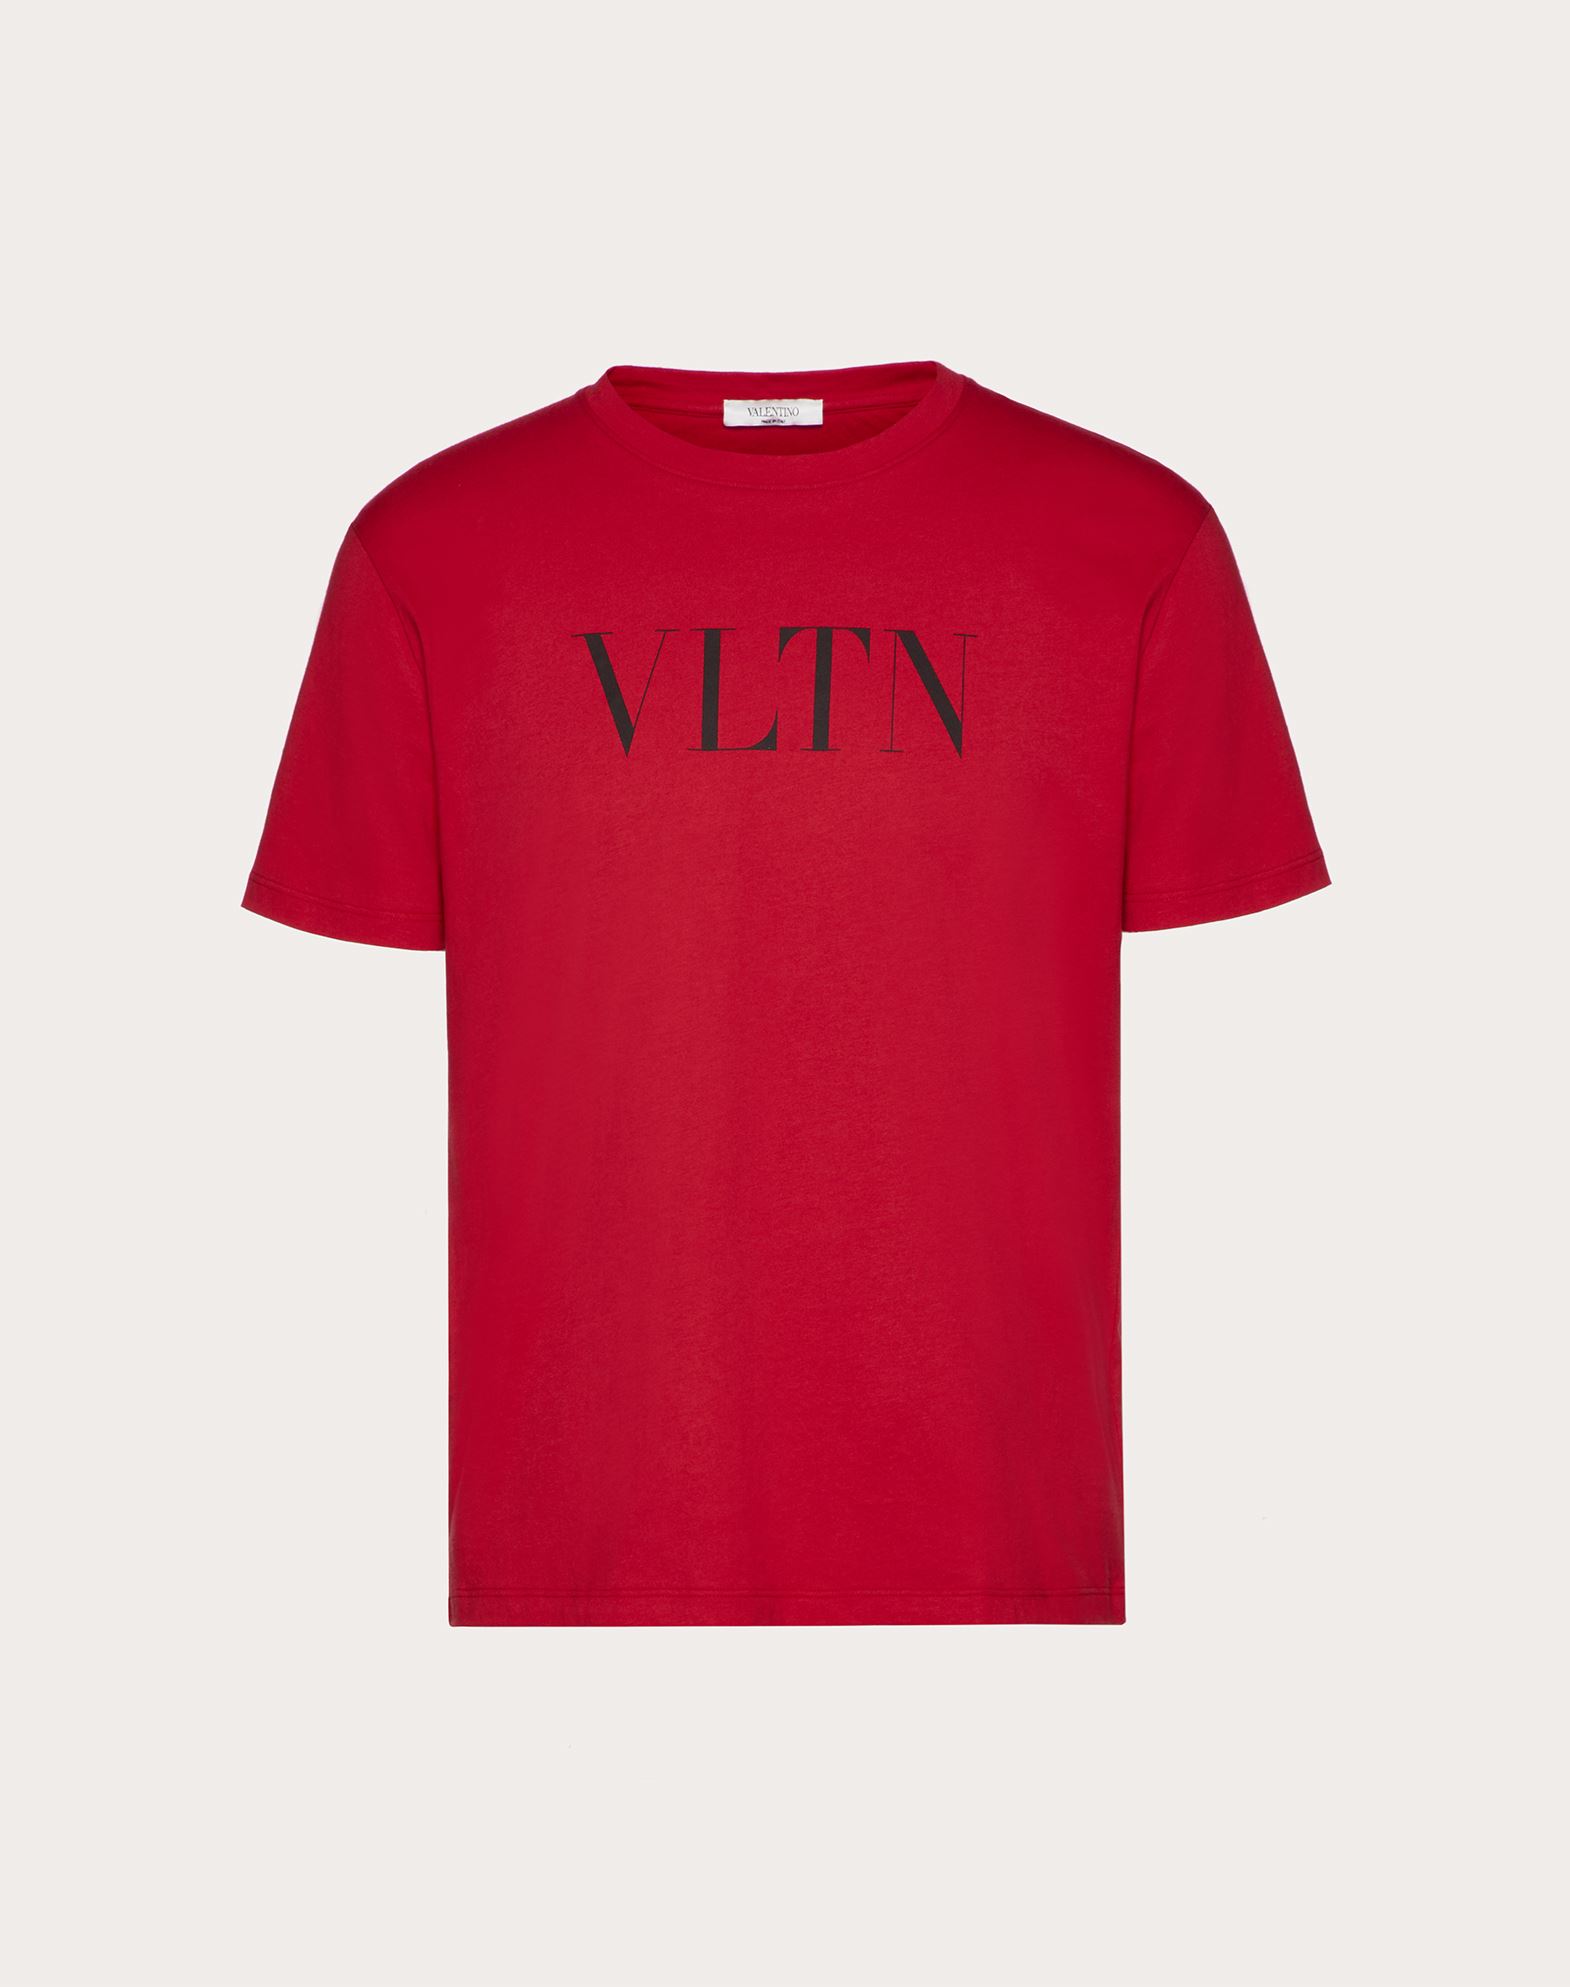 ヴァレンティノ Tシャツ VLTN - rehda.com